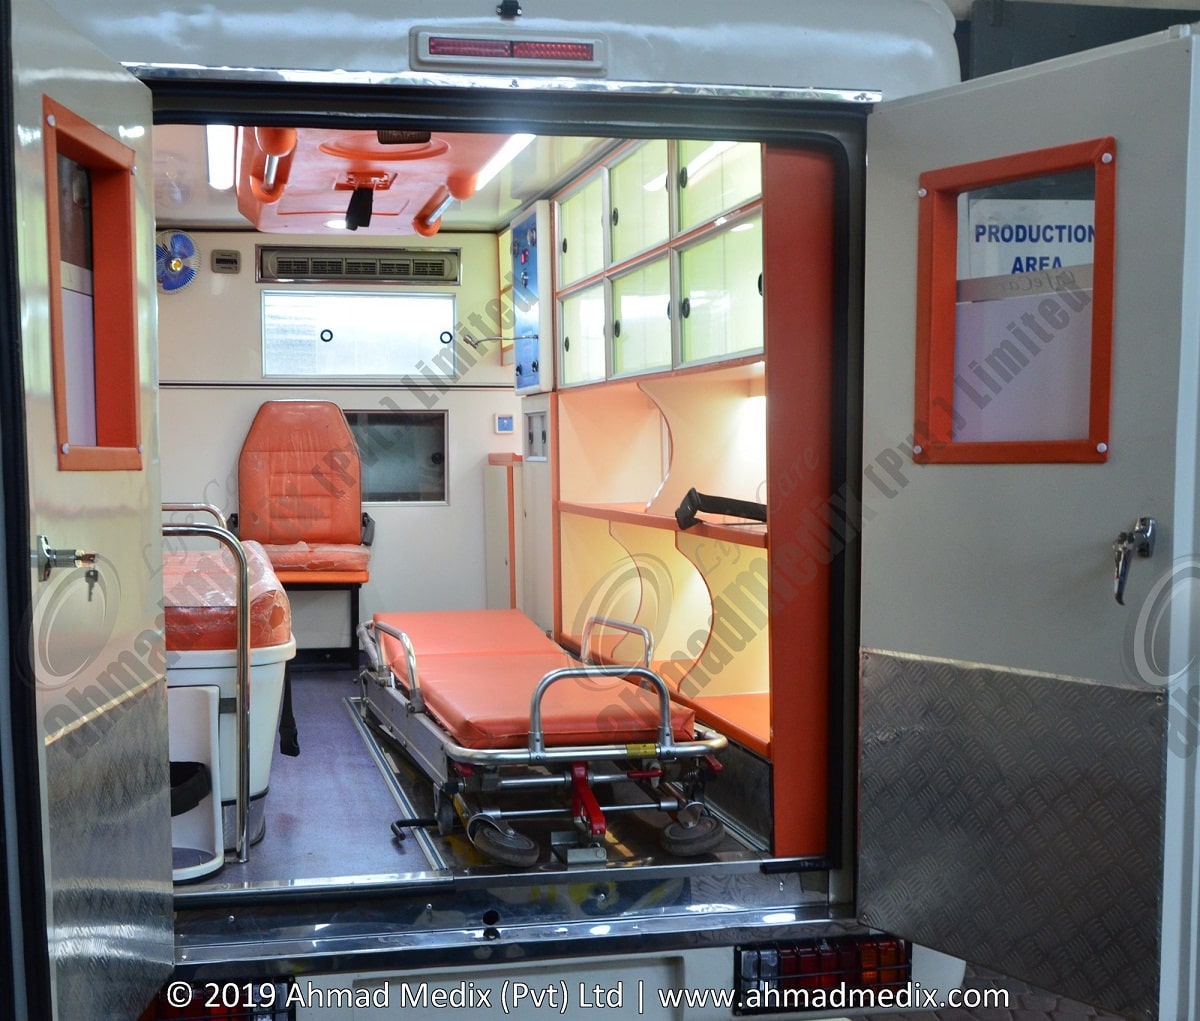 Toyota Hilux Ambulance